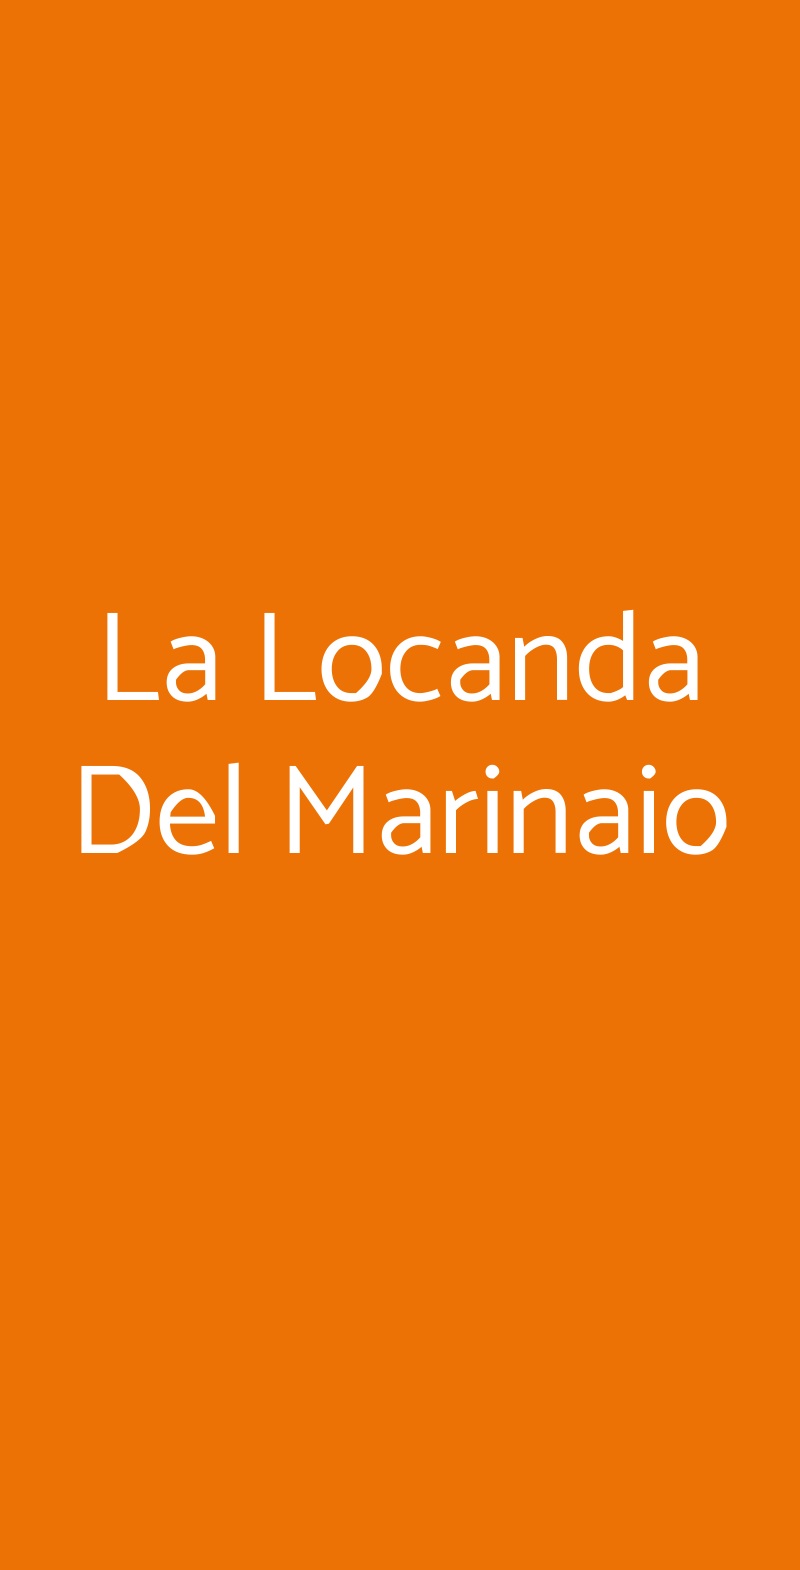 La Locanda Del Marinaio Pomezia menù 1 pagina